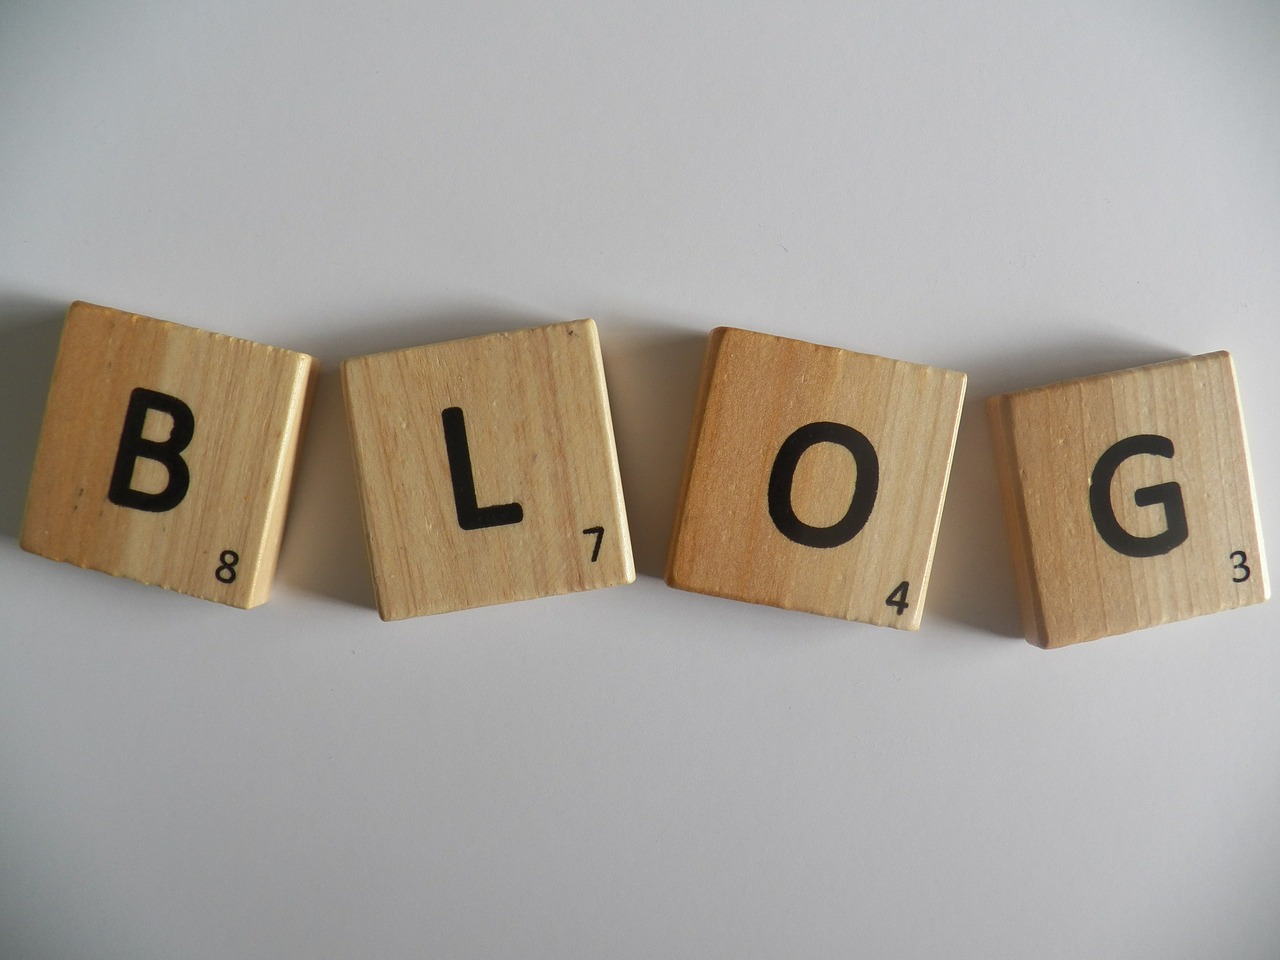 12 элементов, которые позволят сделать свой блог по-настоящему интересным